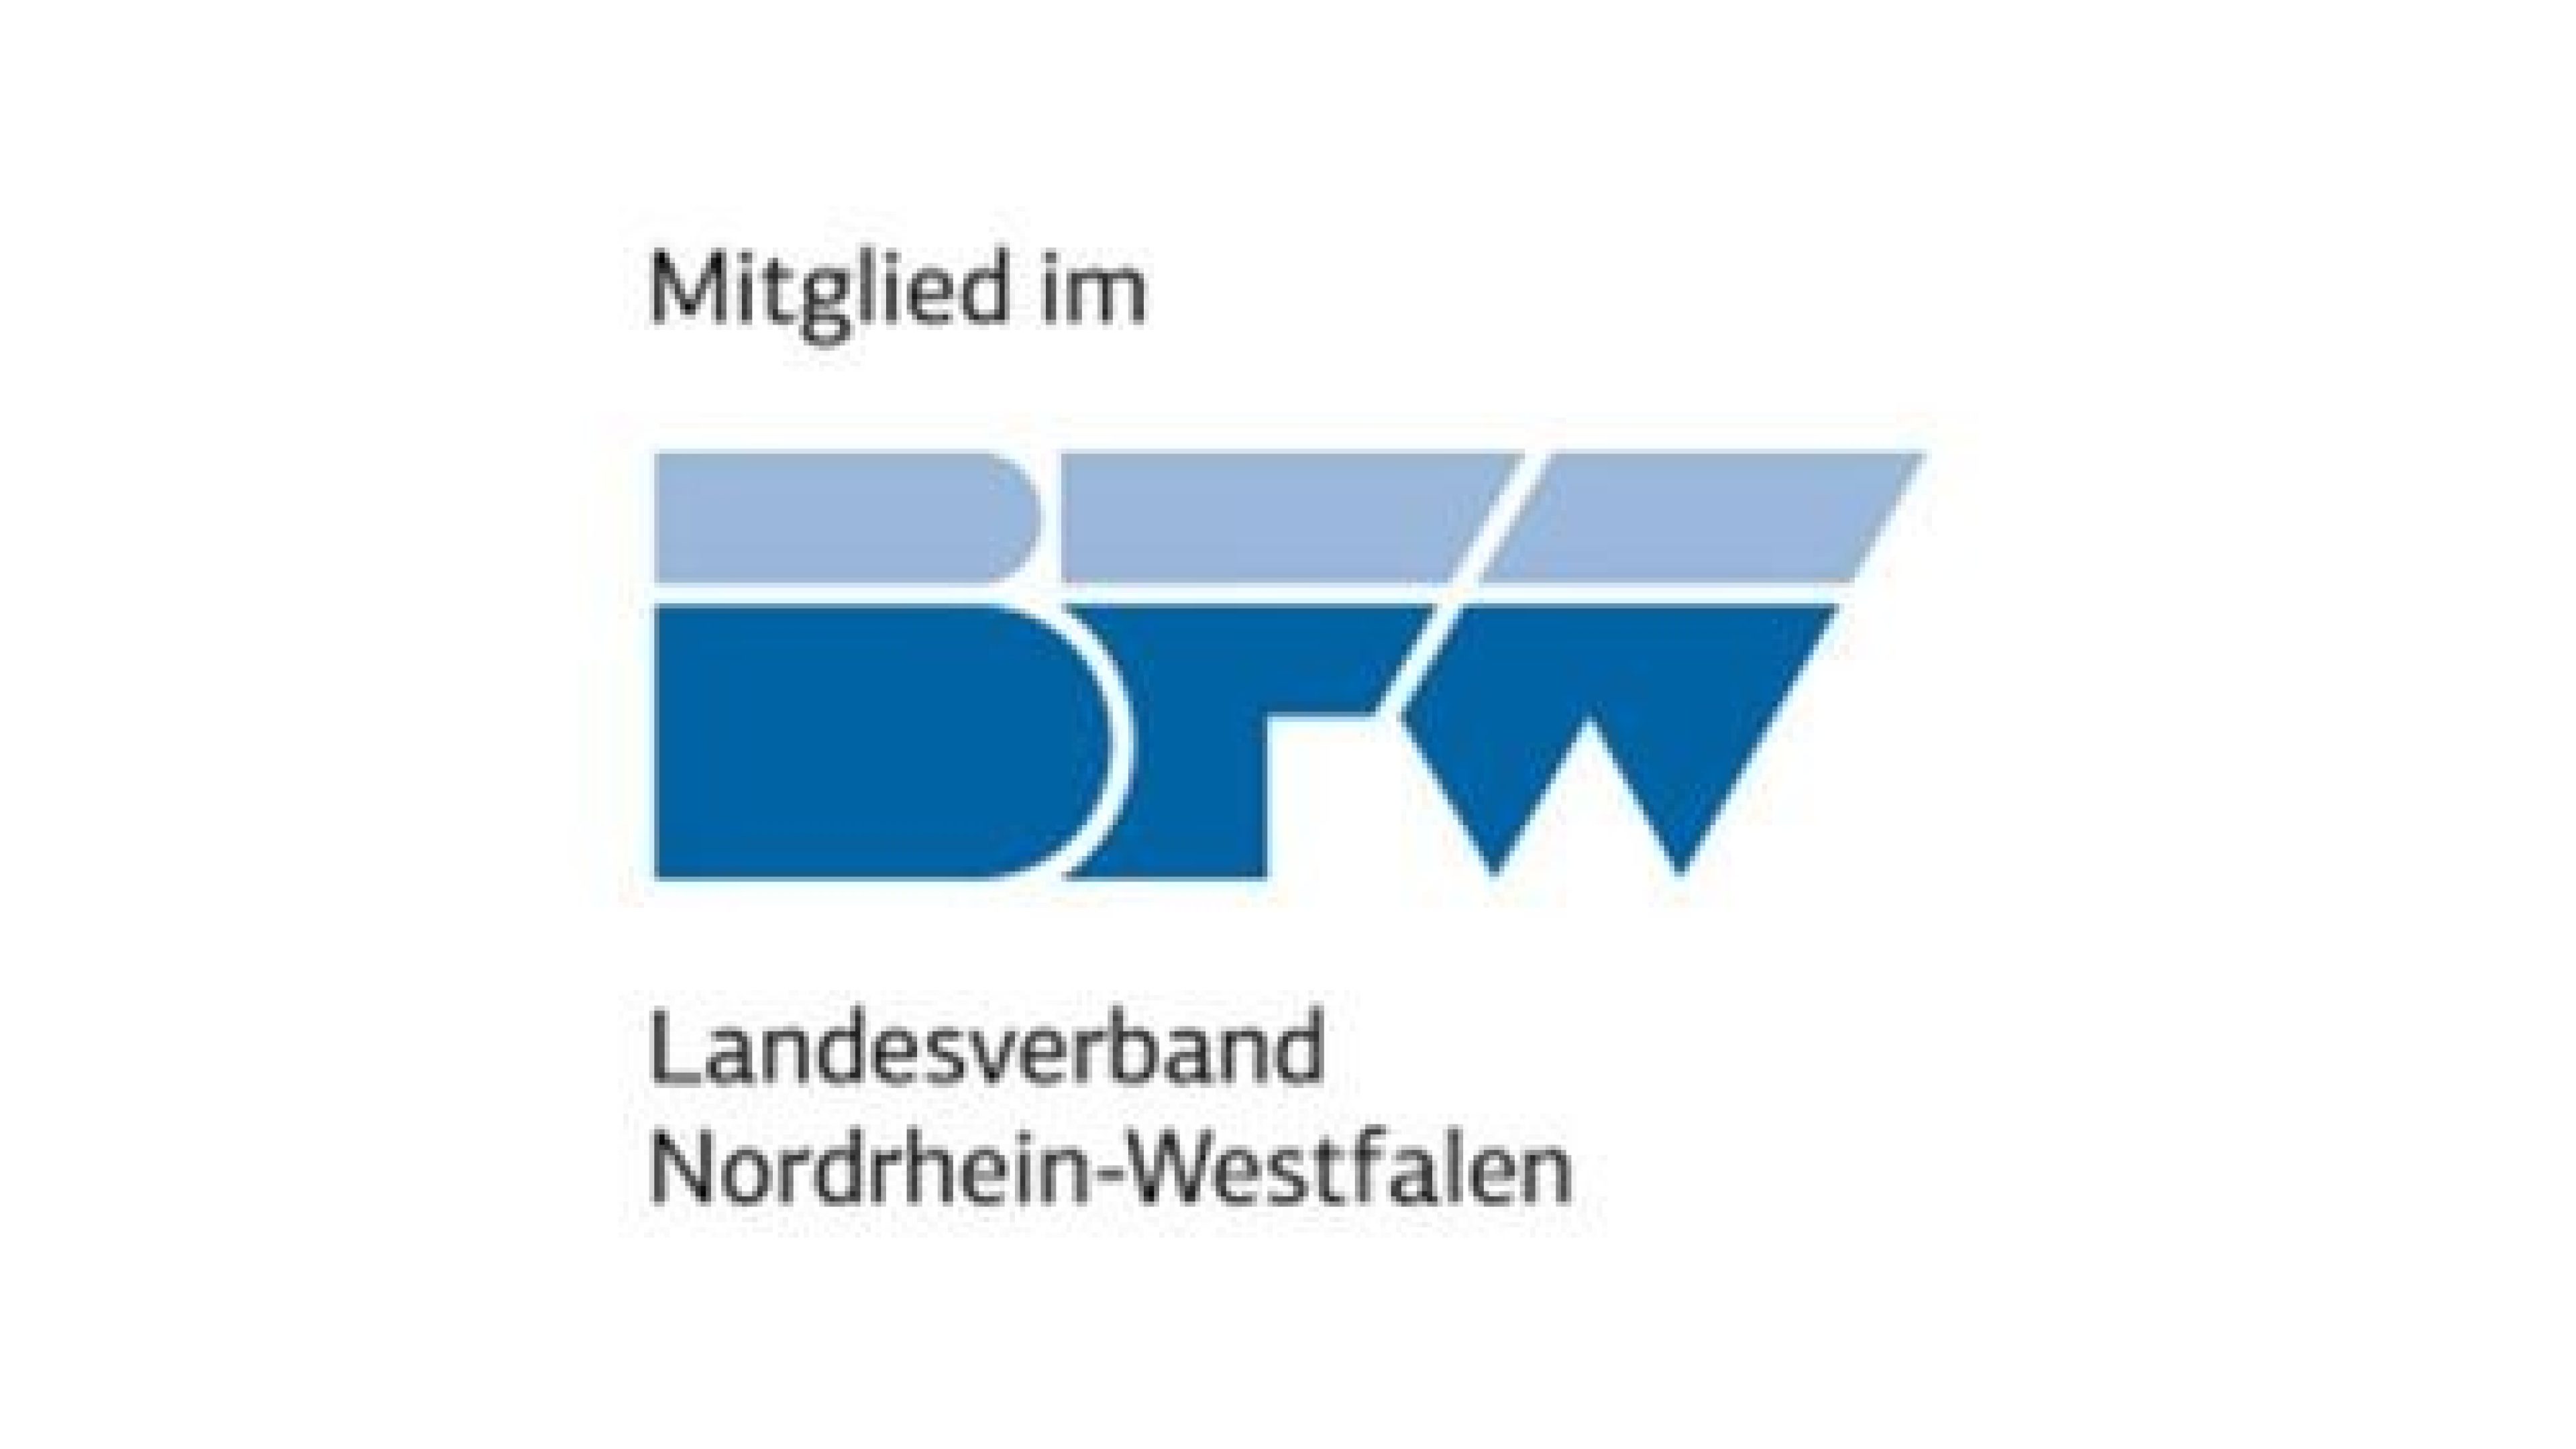 BFW-Landesverband-Nordrhein-Westfalen-v2